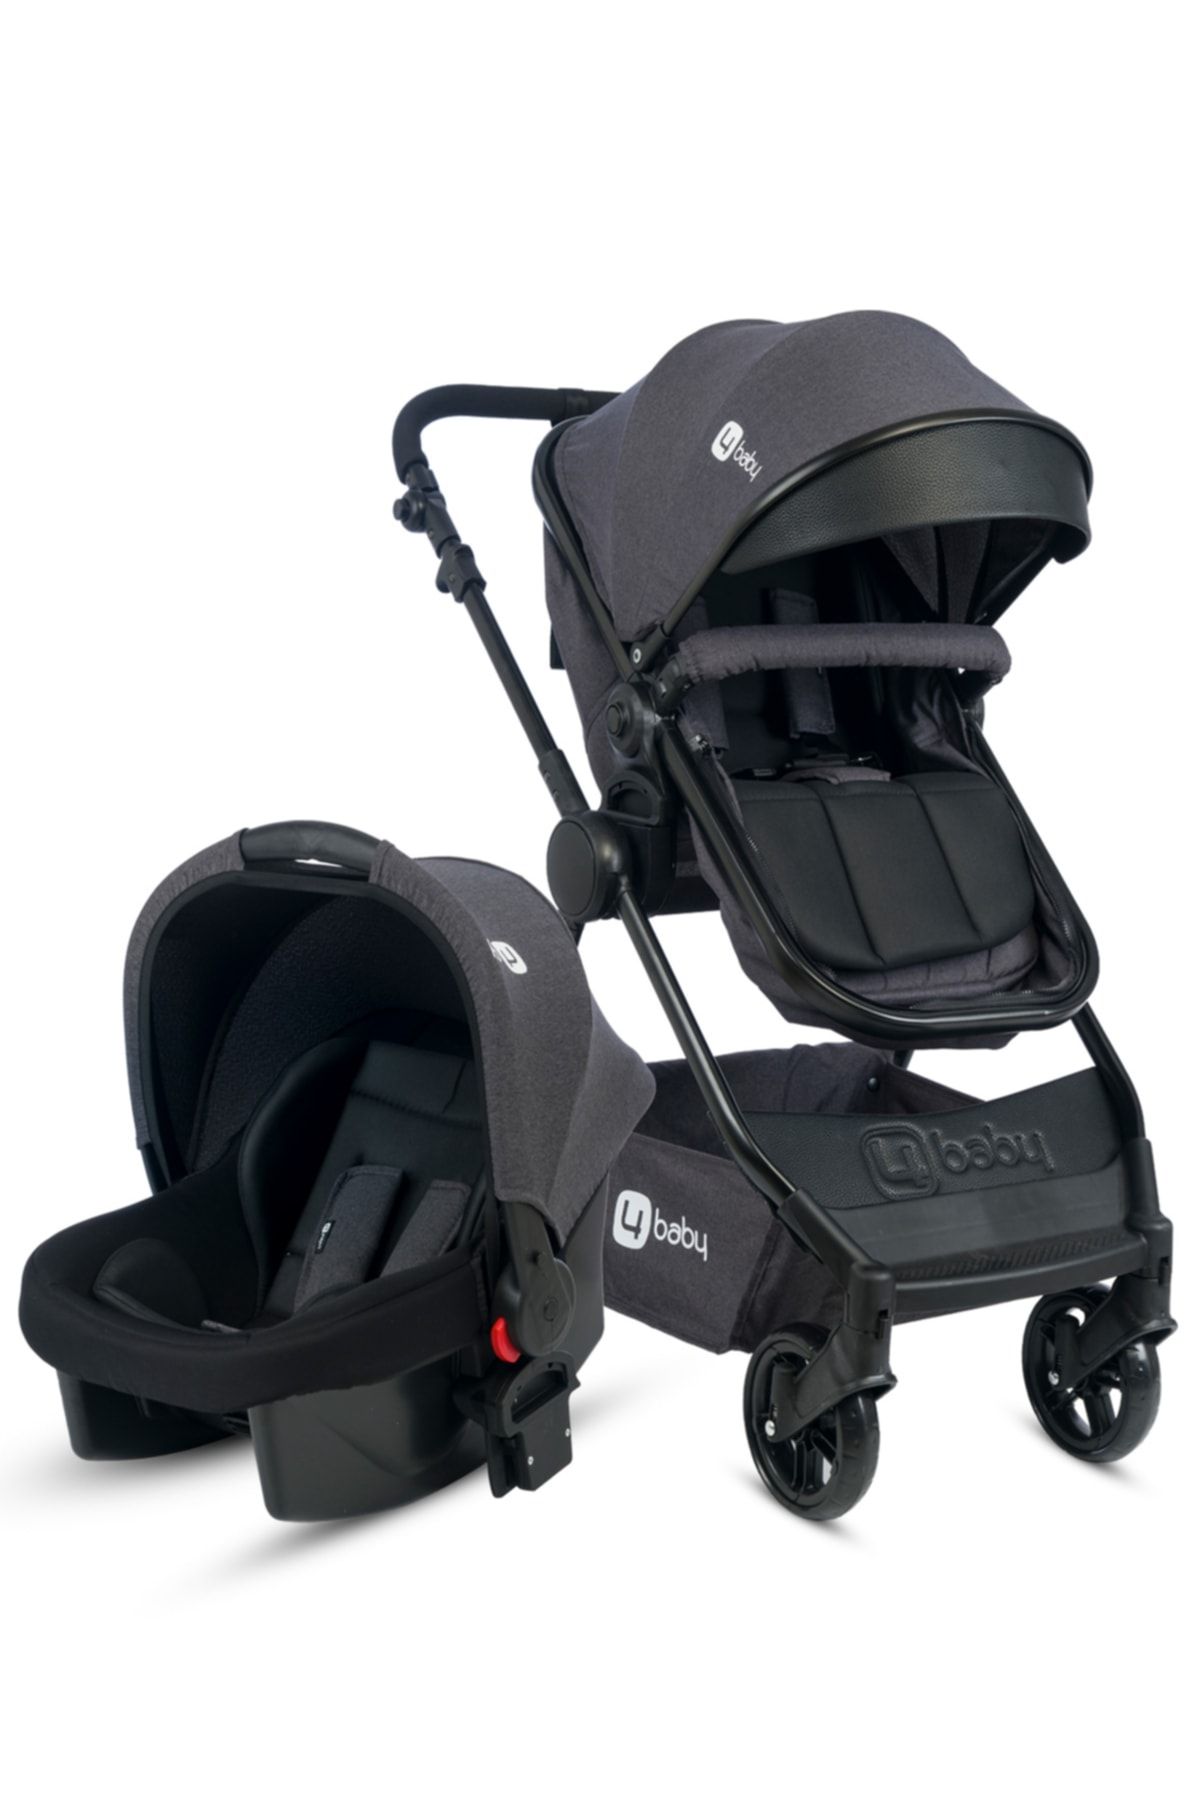 4 Baby Comfort Siyah-Antrasit Travel Sistem Bebek Arabası Seyahat Sistem Puset, Taşıma Koltuğu, Yağmurluk